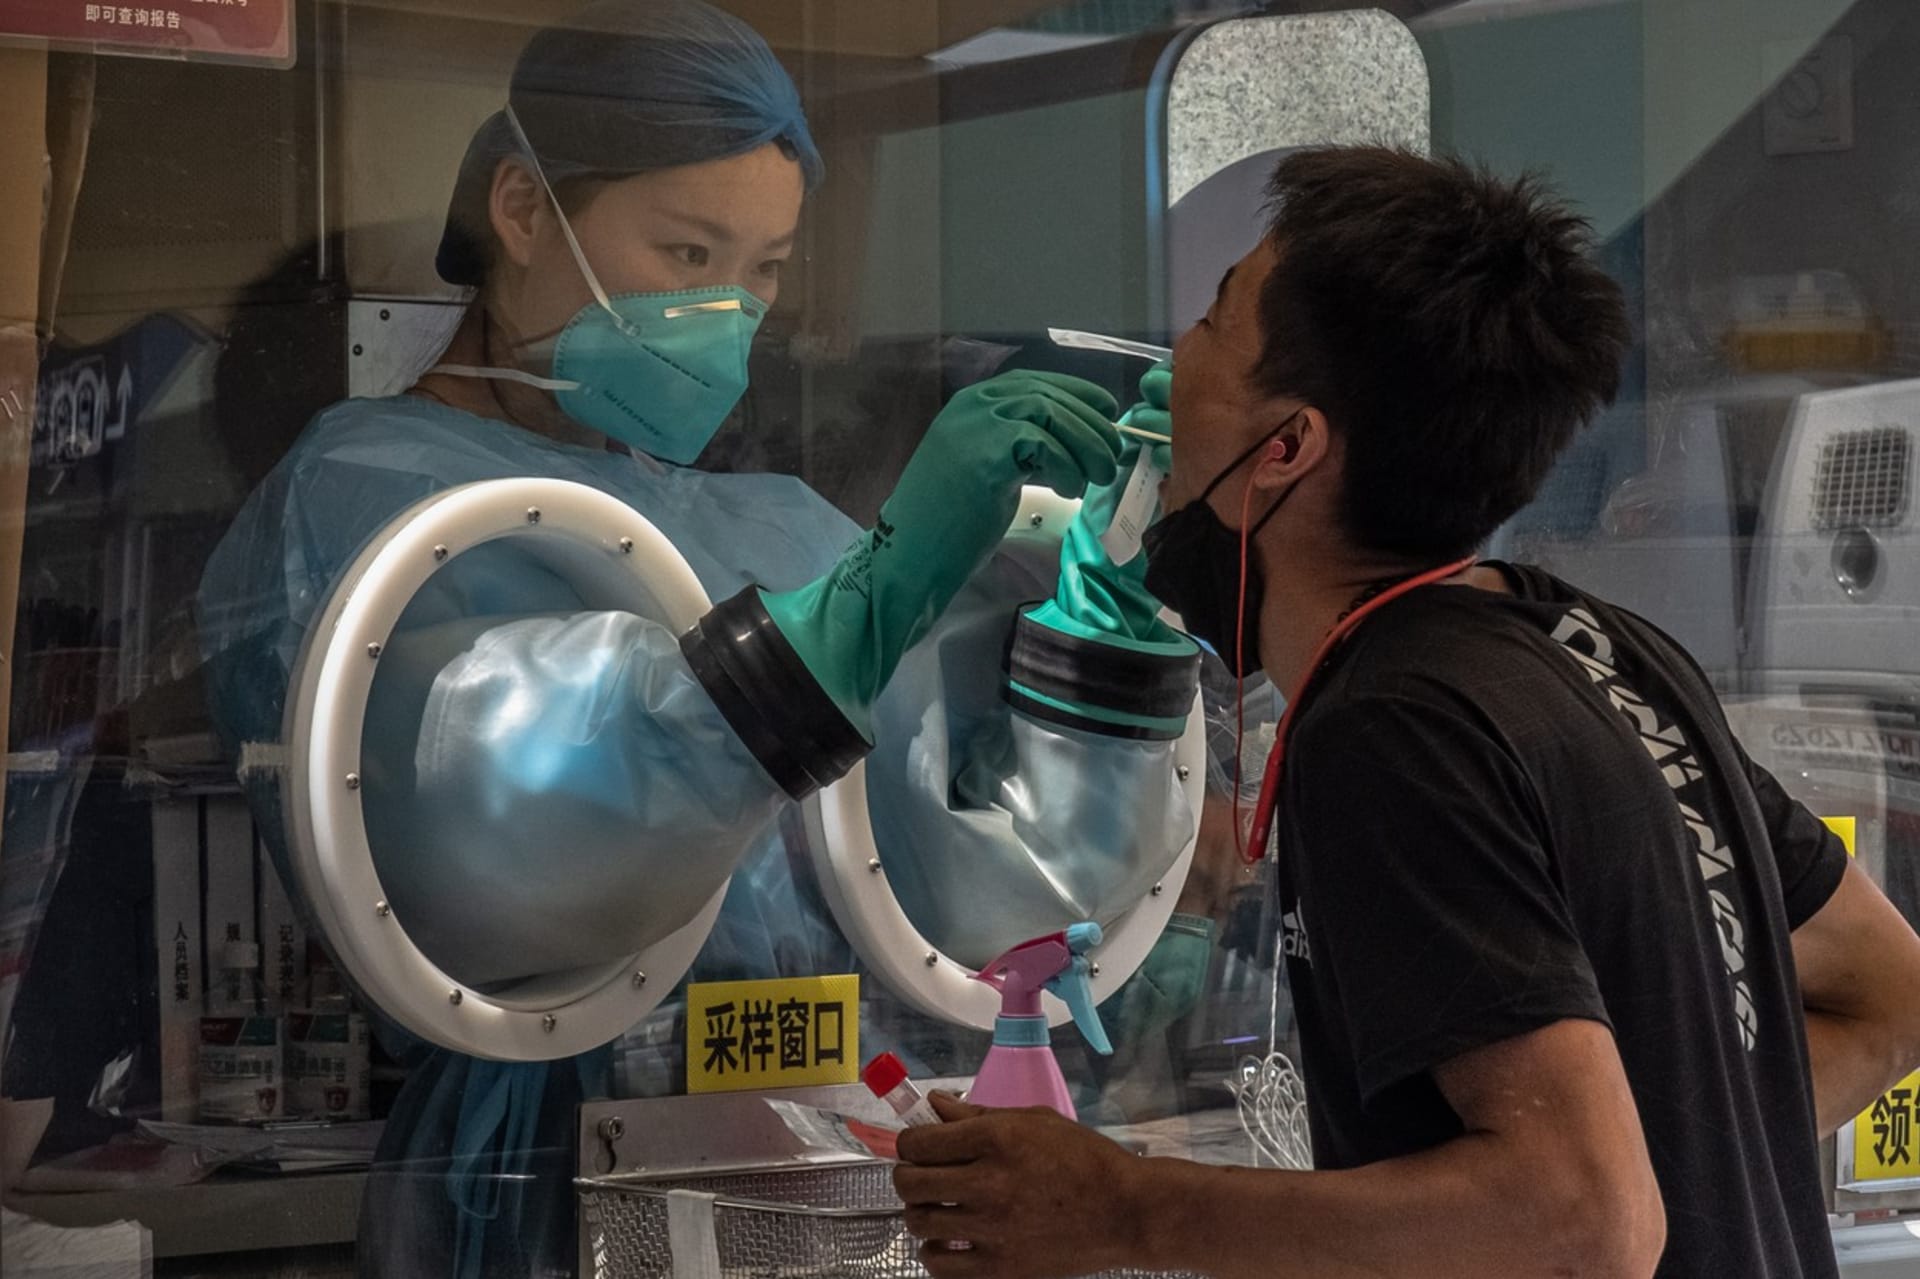 Koronavirové testování v Pekingu